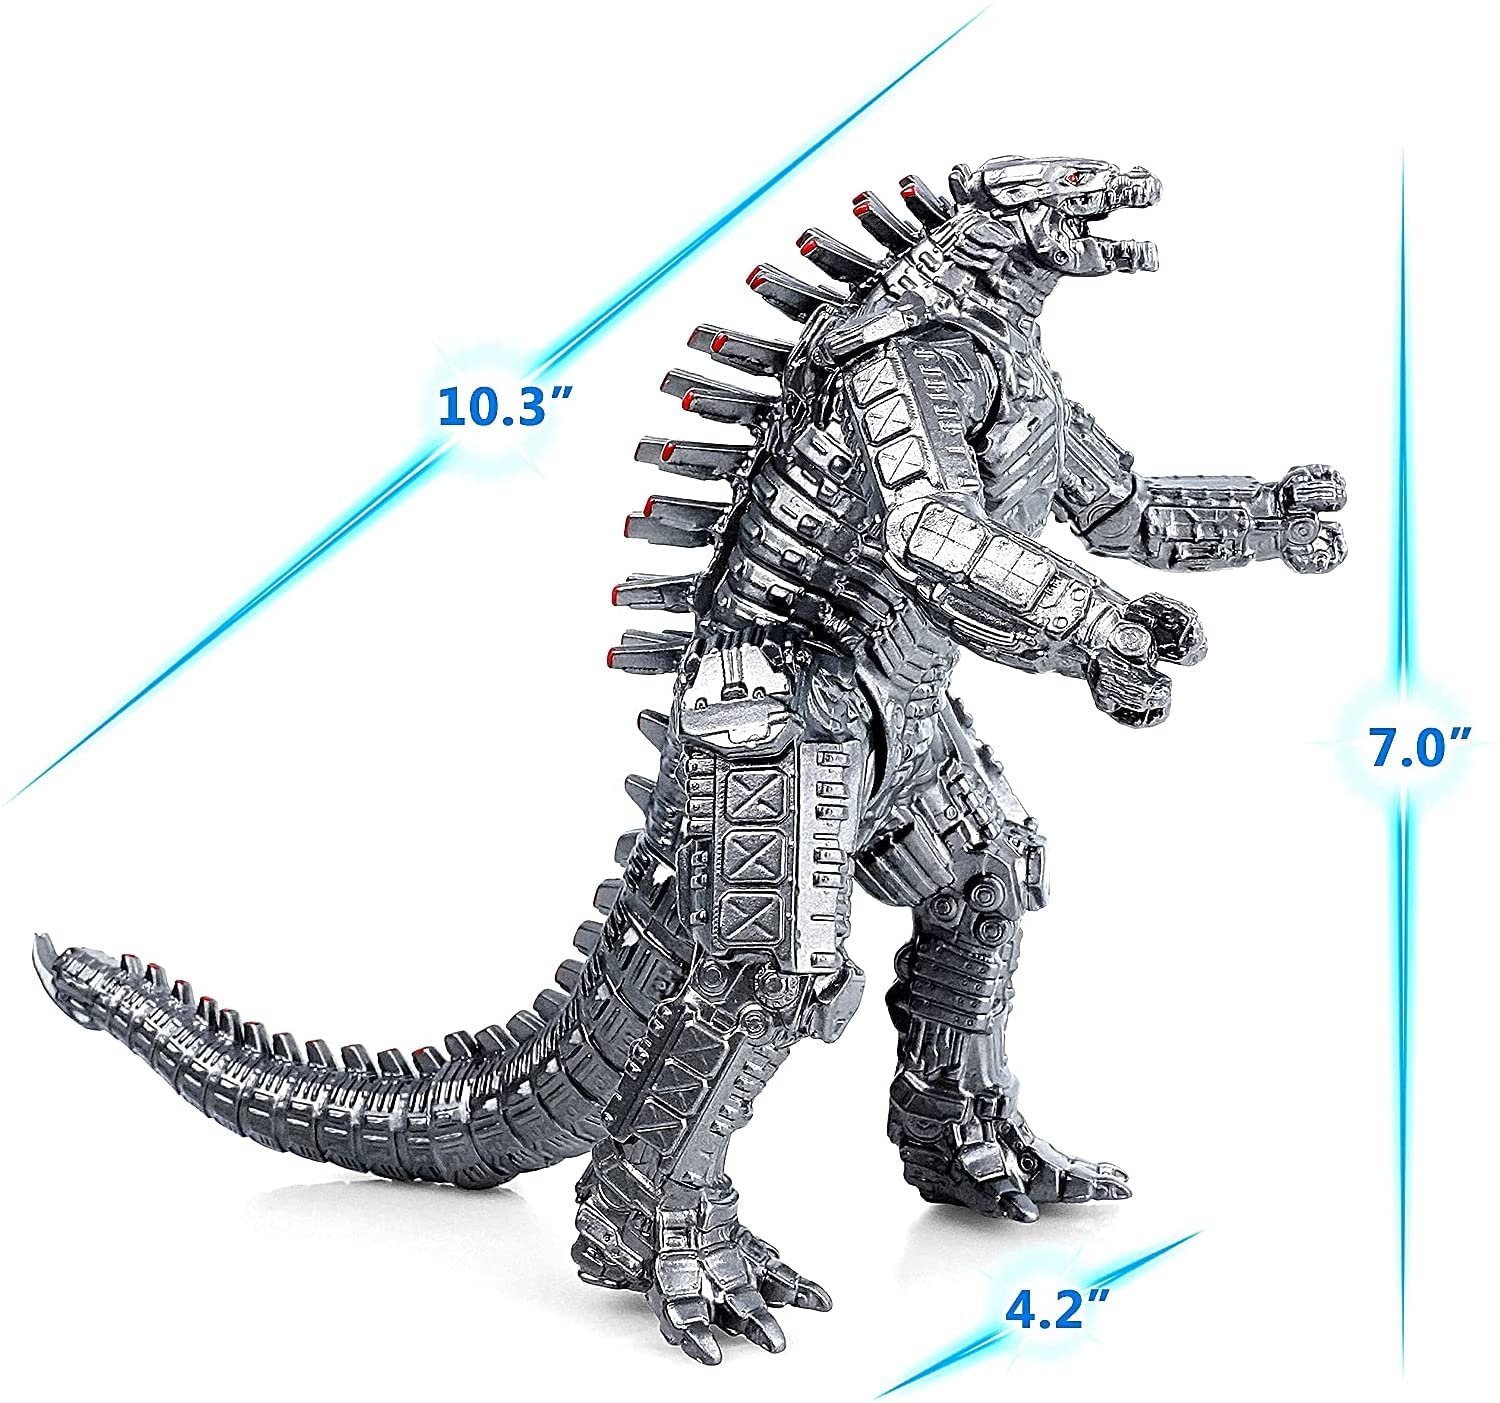 Bạn yêu thích những chiếc robot khổng lồ đầy sức mạnh? Hãy đến với MechaGodzilla - chiếc robot được nhiều fan hâm mộ Godzilla yêu thích. Xem những hình ảnh về MechaGodzilla để thấy được sự bá đạo và uy lực của nó.